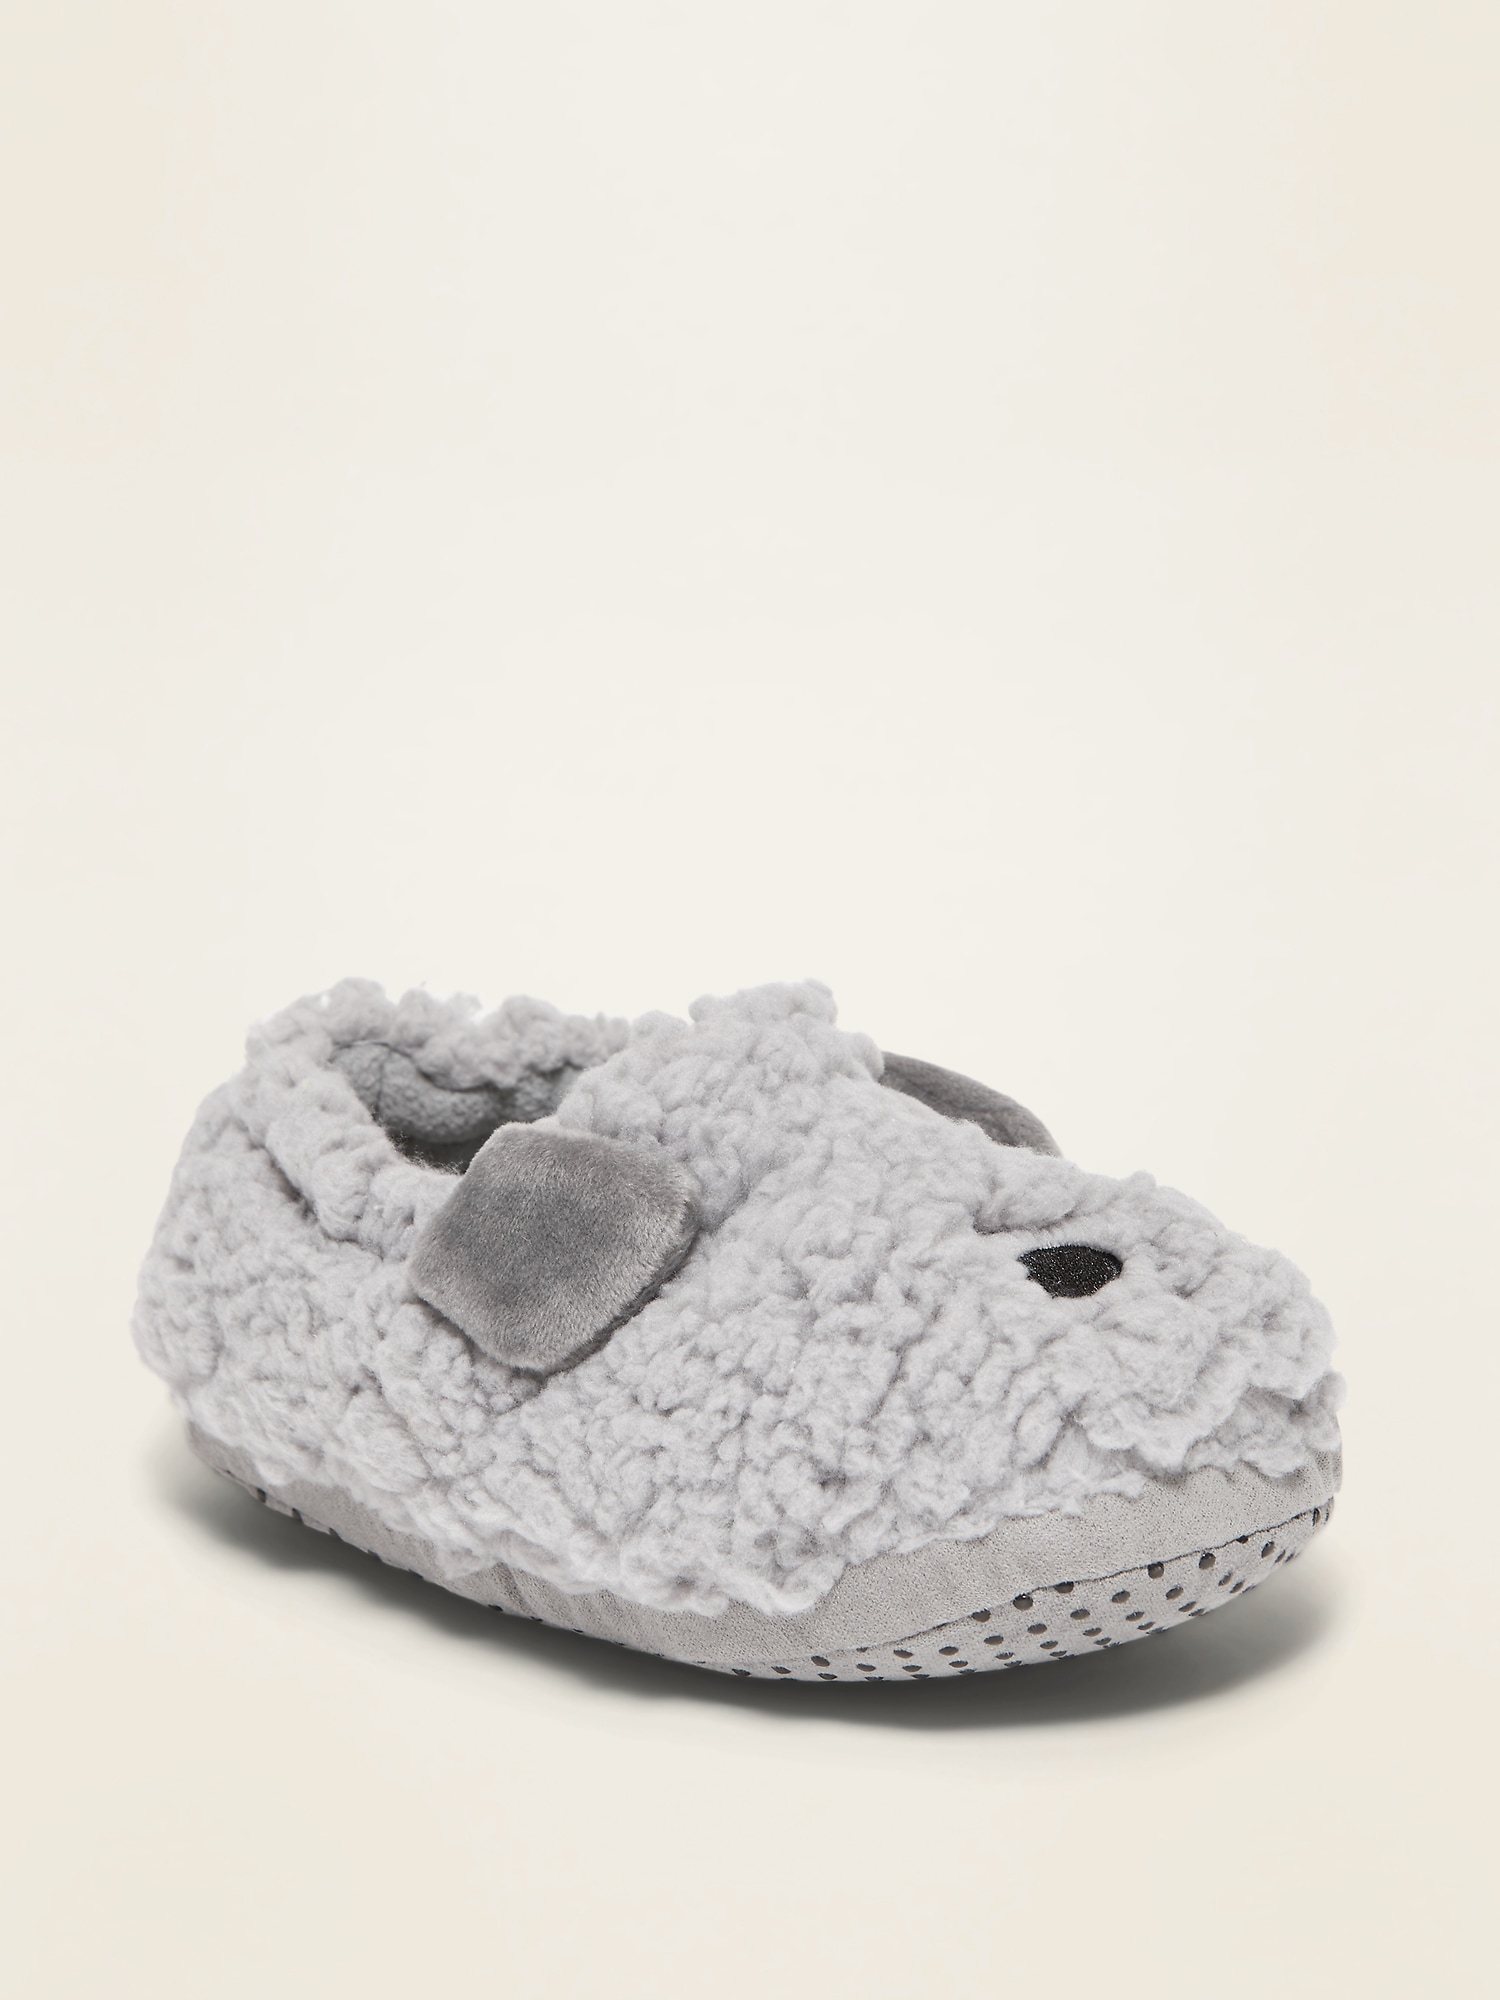 Unisex Critter Slippers for Toddler 